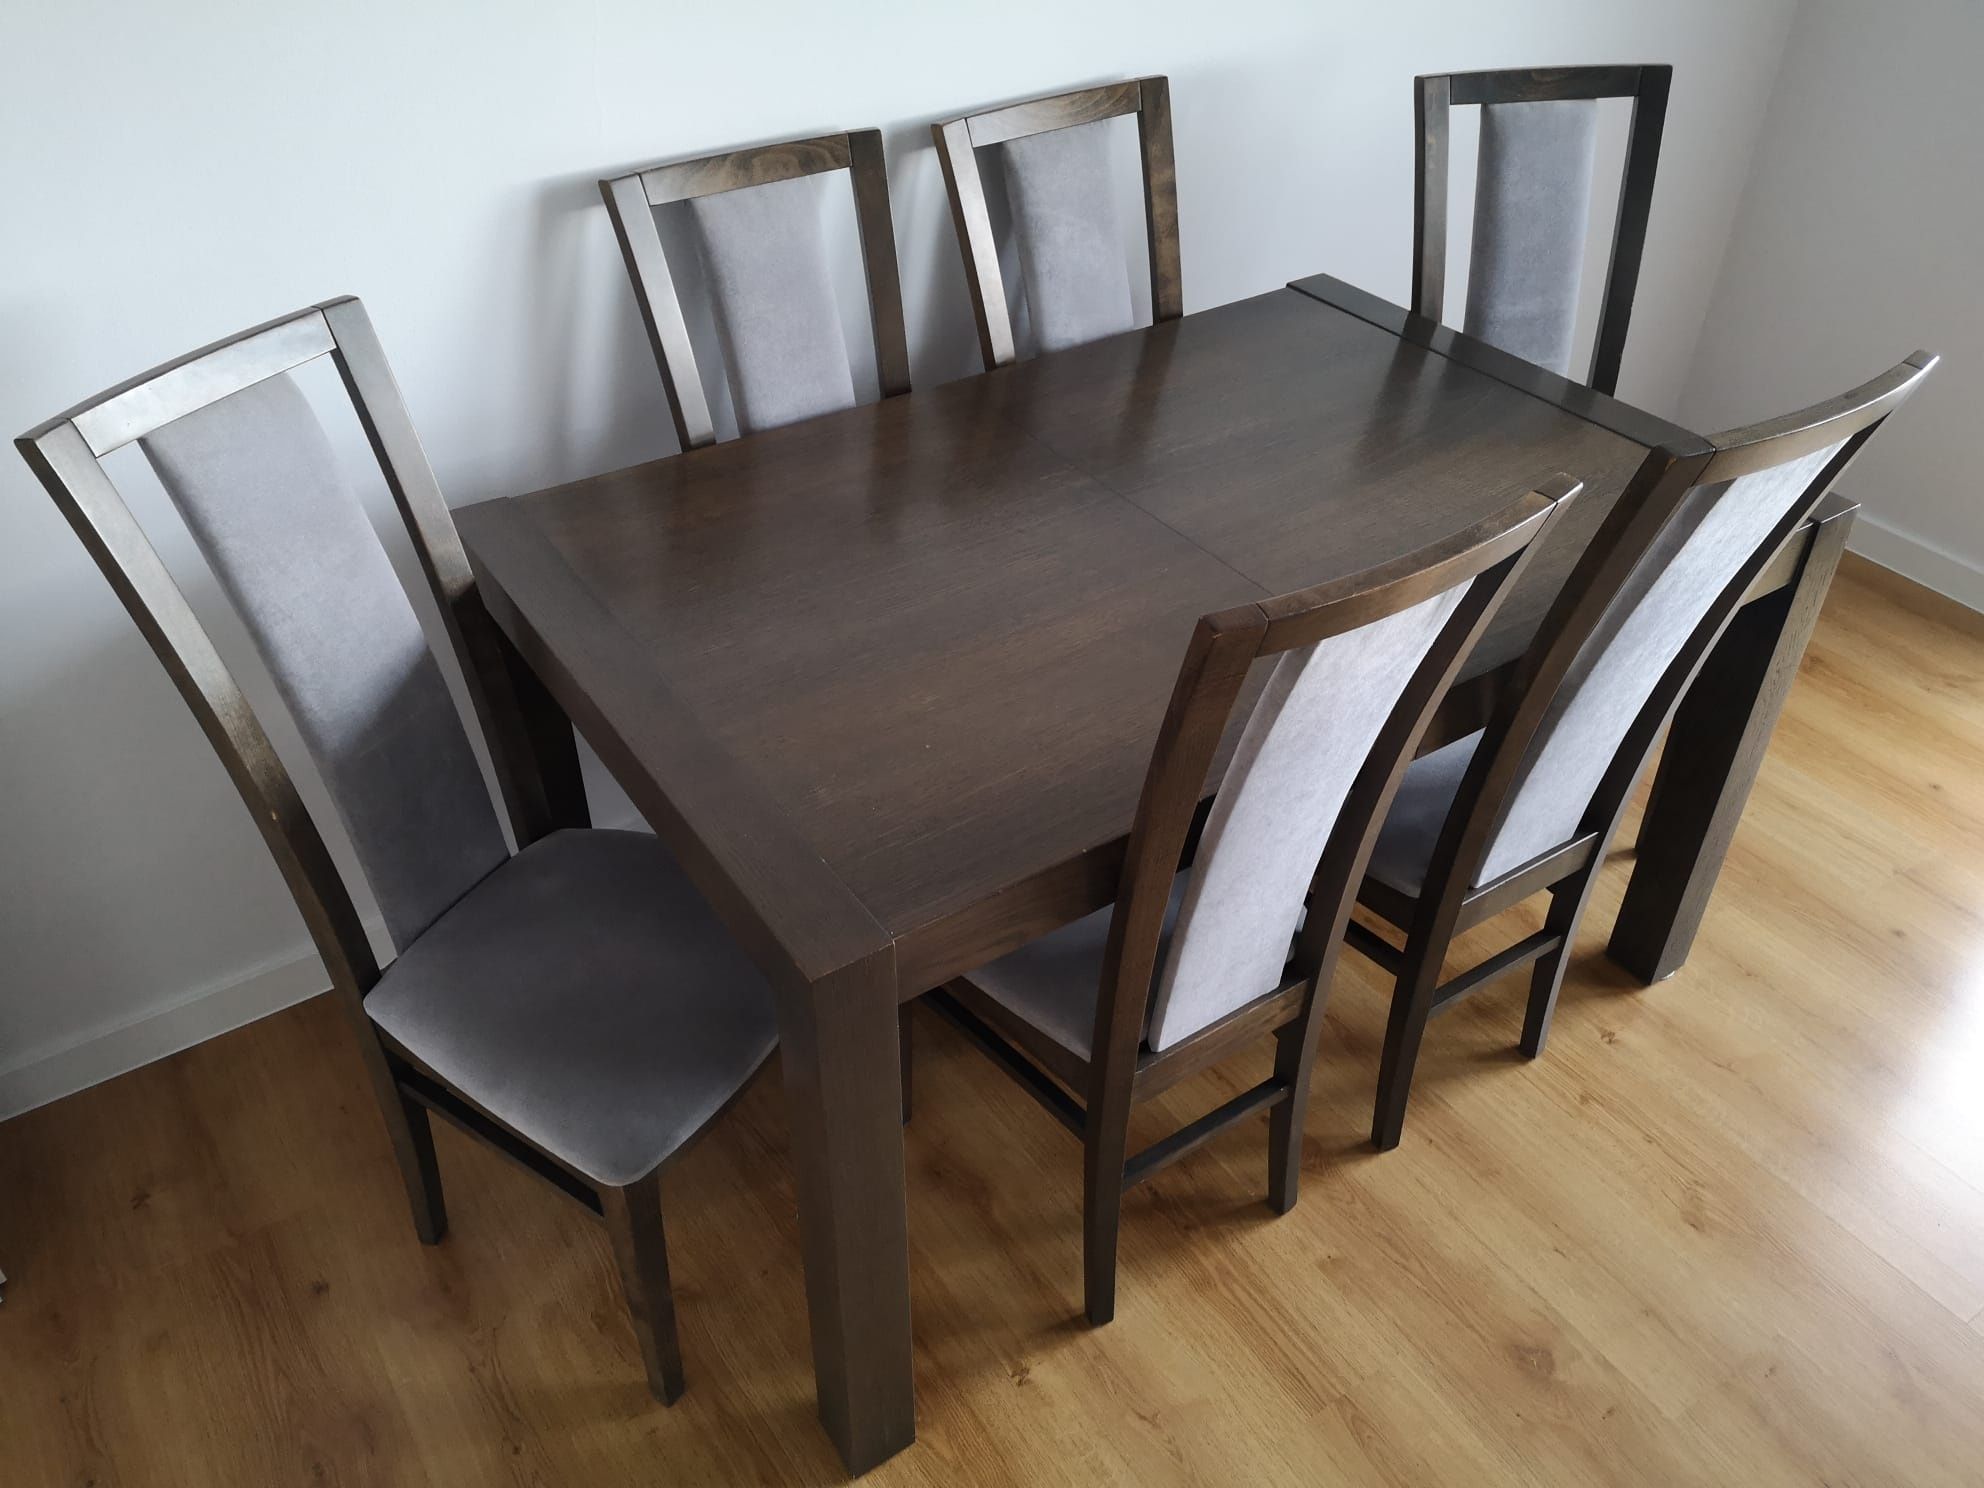 Stół rozkładany + 6 krzeseł. Cena do negocjacji